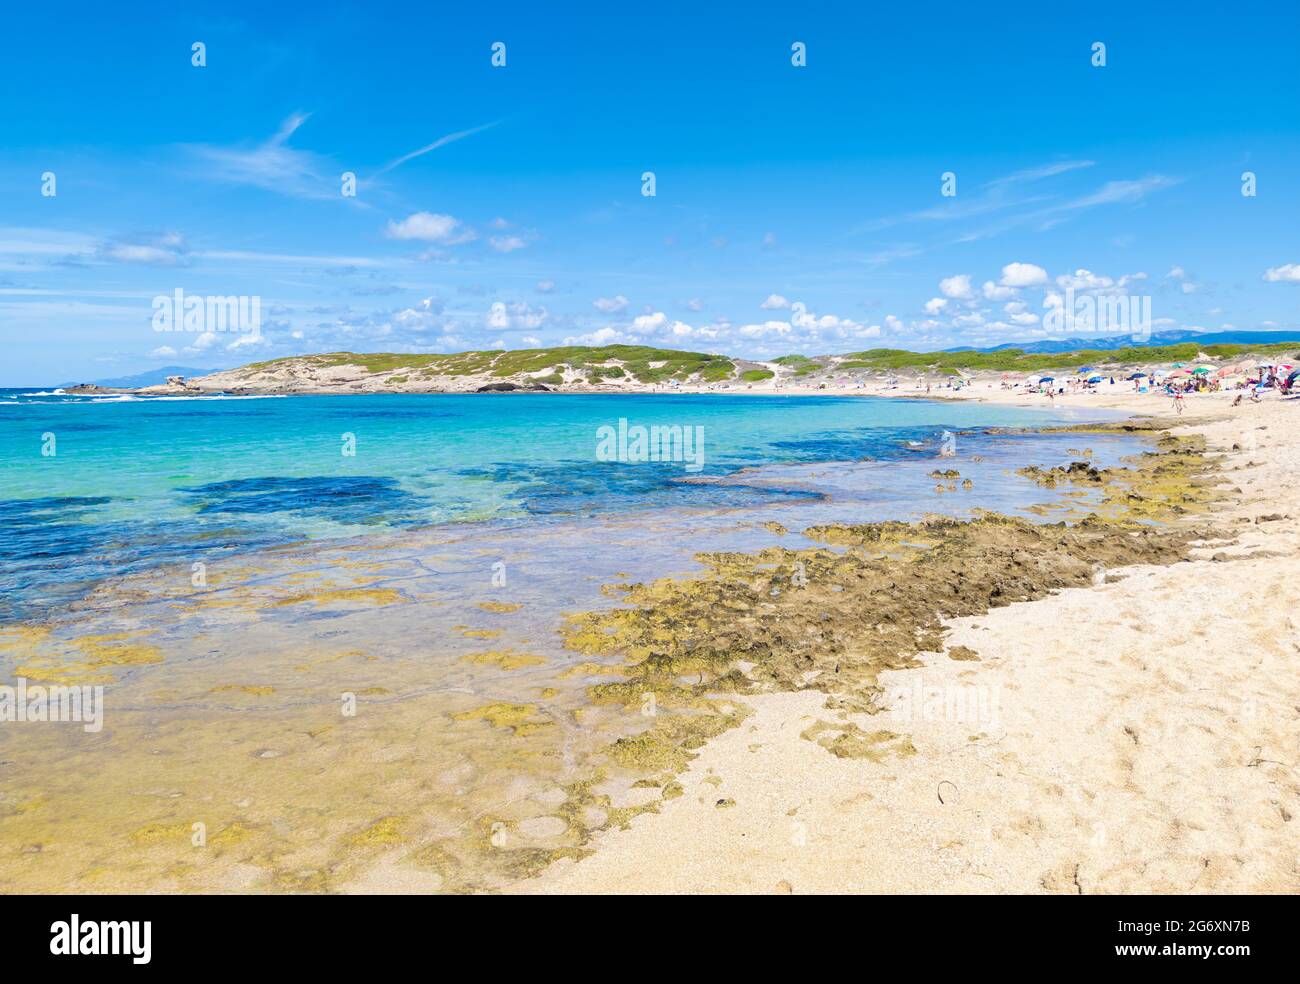 Cabras (Italia) - la città turistica costiera della Sardegna, con spiaggia, penisola del Sinis e sito archeologico di Tharros. Foto Stock